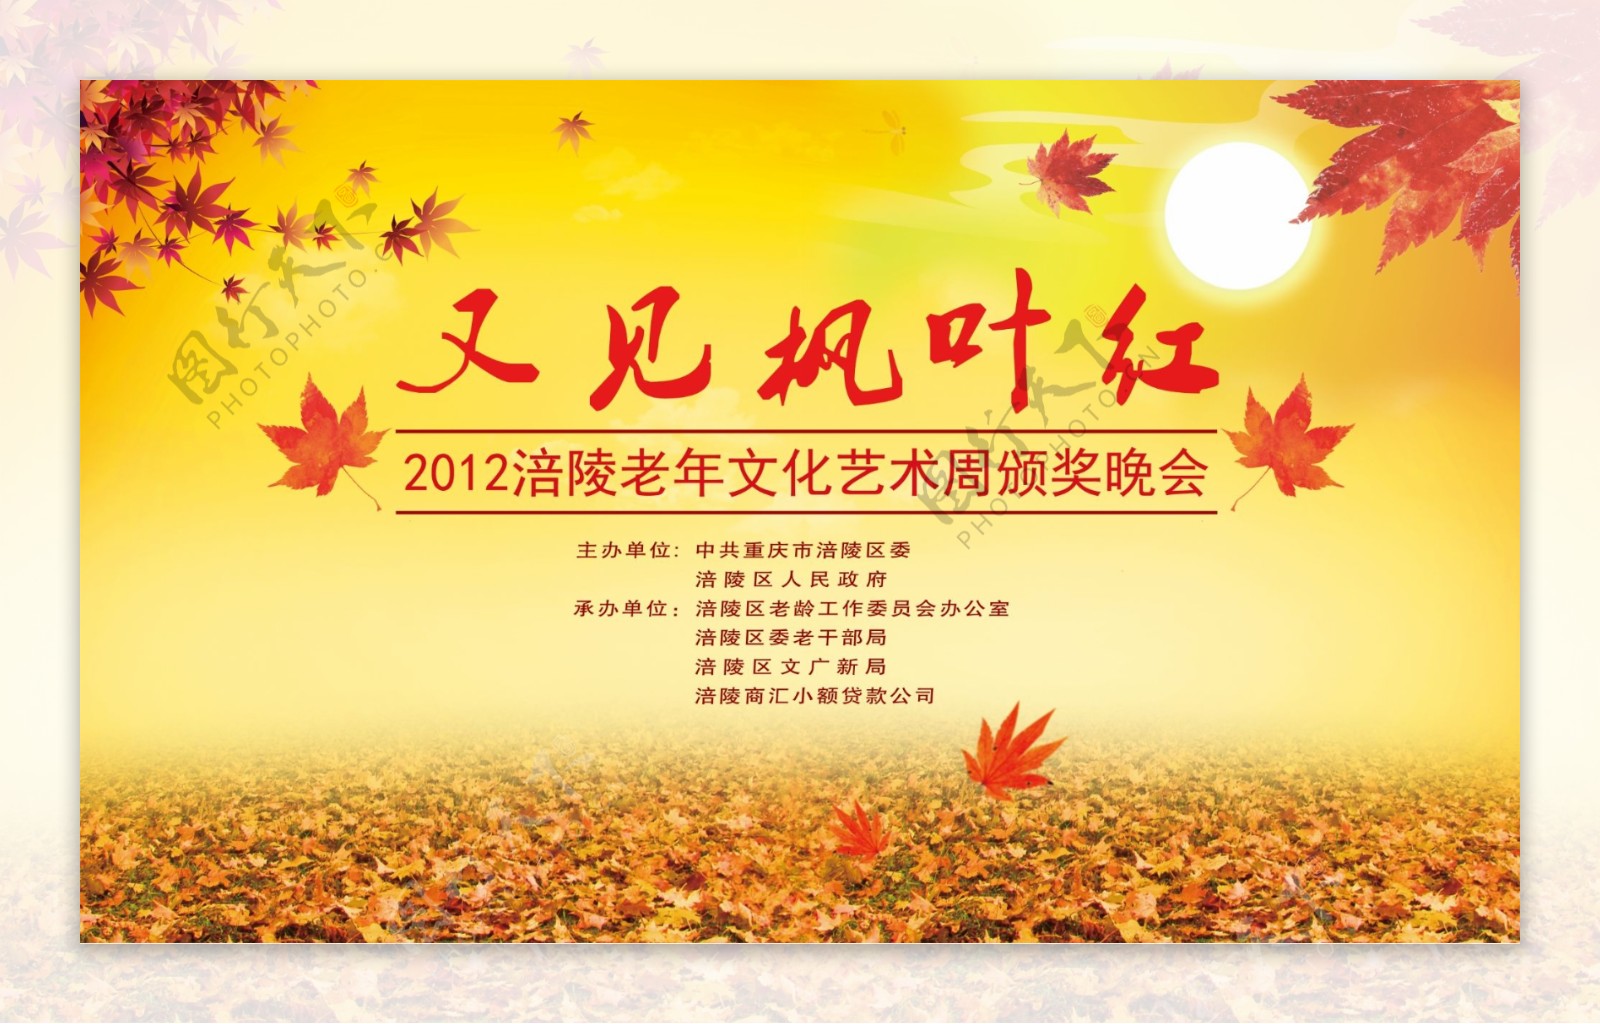 又见枫叶红老年文化艺术节重阳节图片